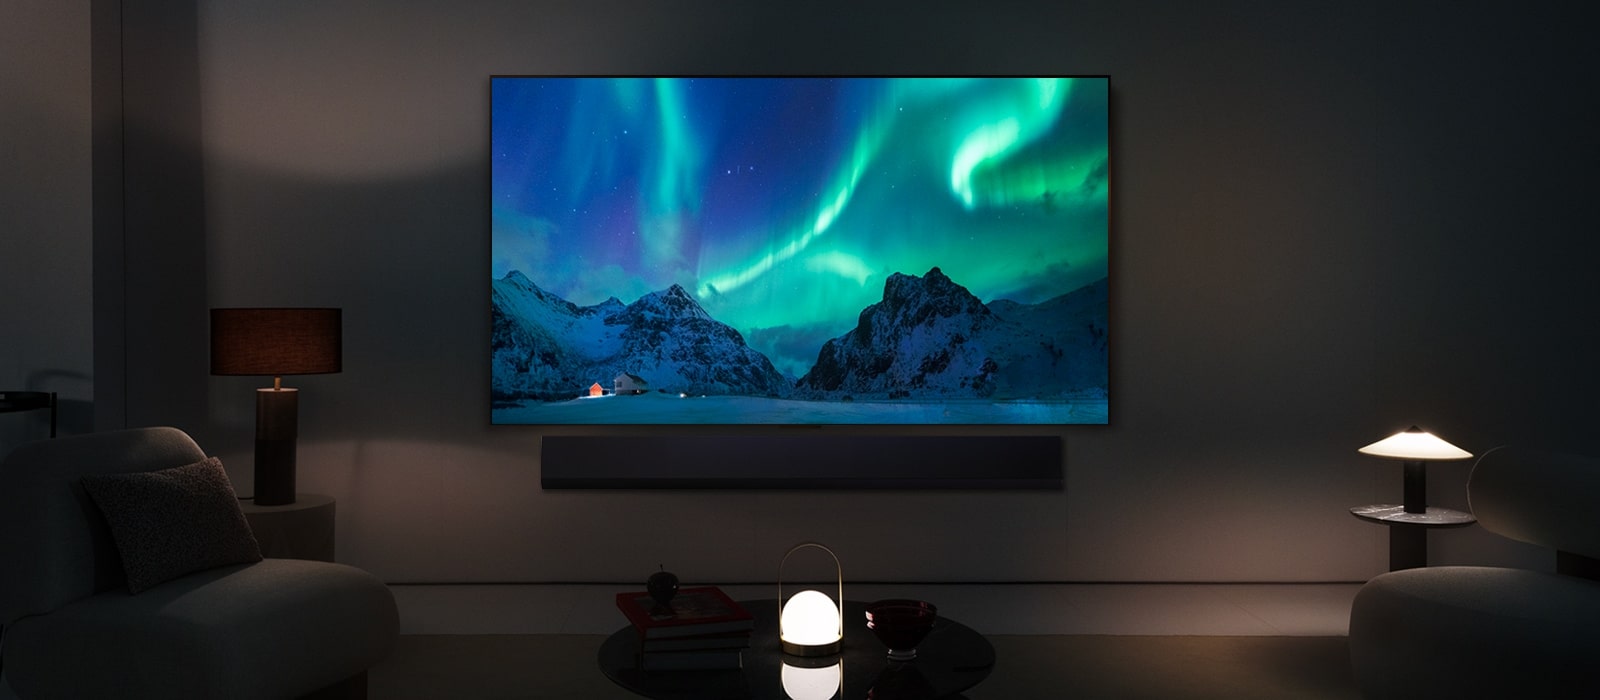 LG OLED TV og LG Soundbar i en moderne stue om natten. Skjermbildet av nordlyset vises med ideelle lysnivåer.